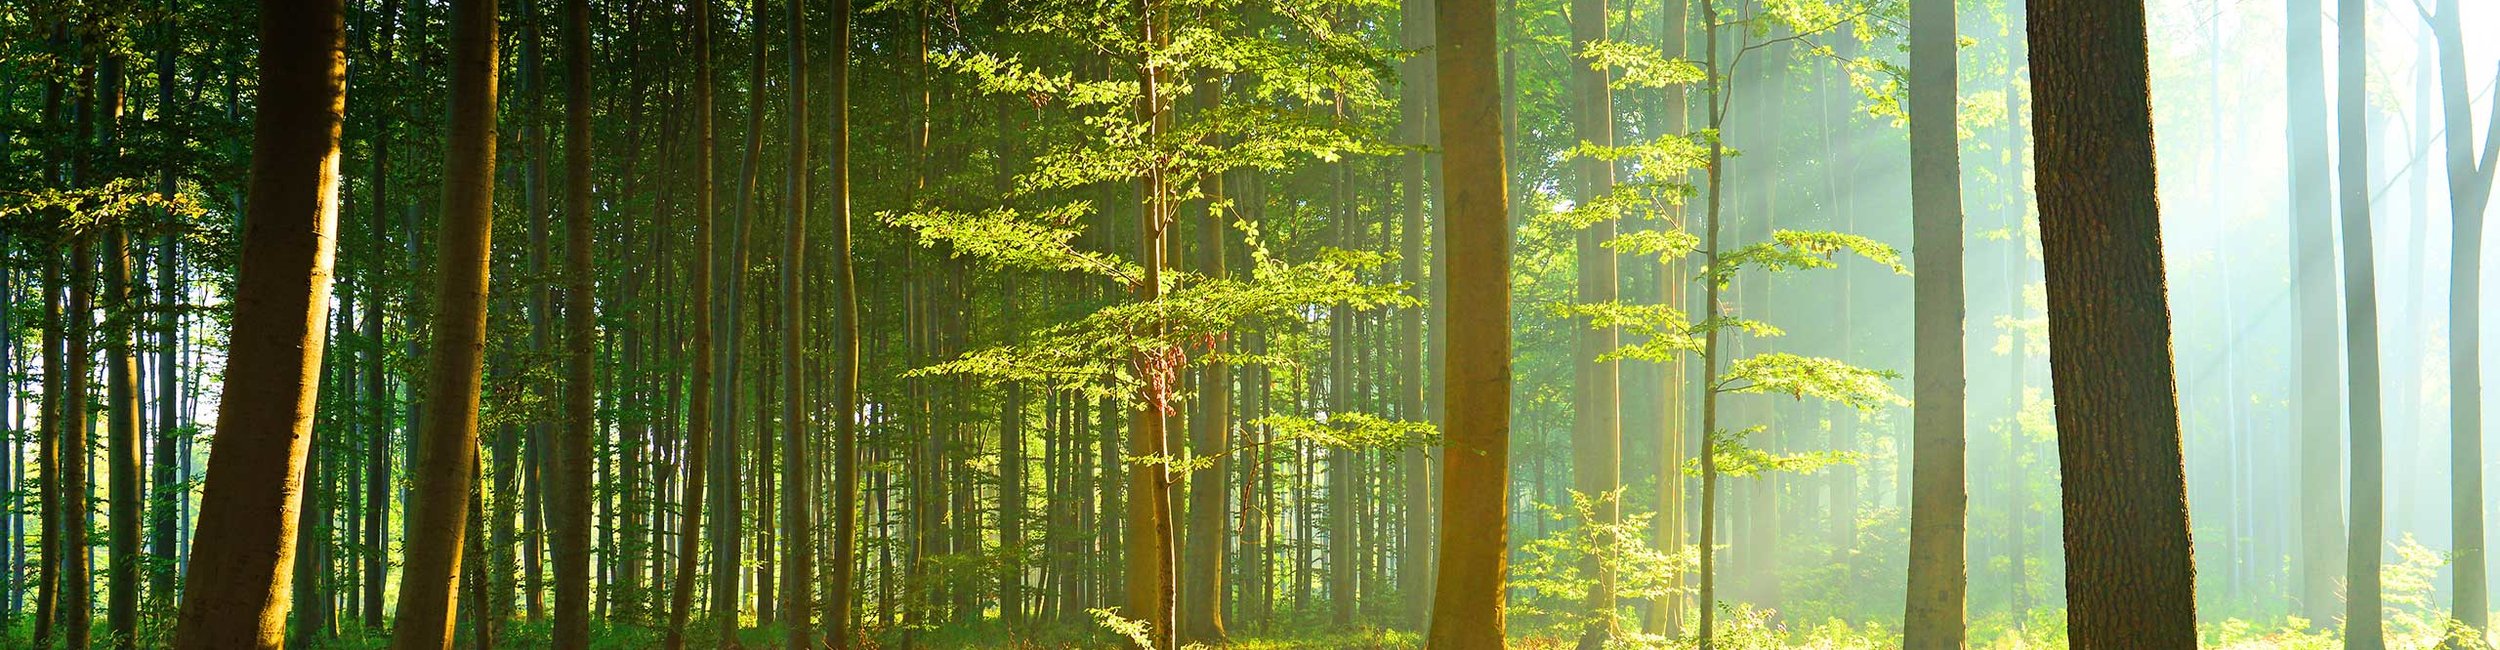 Informations plus précises - Ecureuil - Aventure en forêt - Notre forêt.  Incroyablement diversifiée.